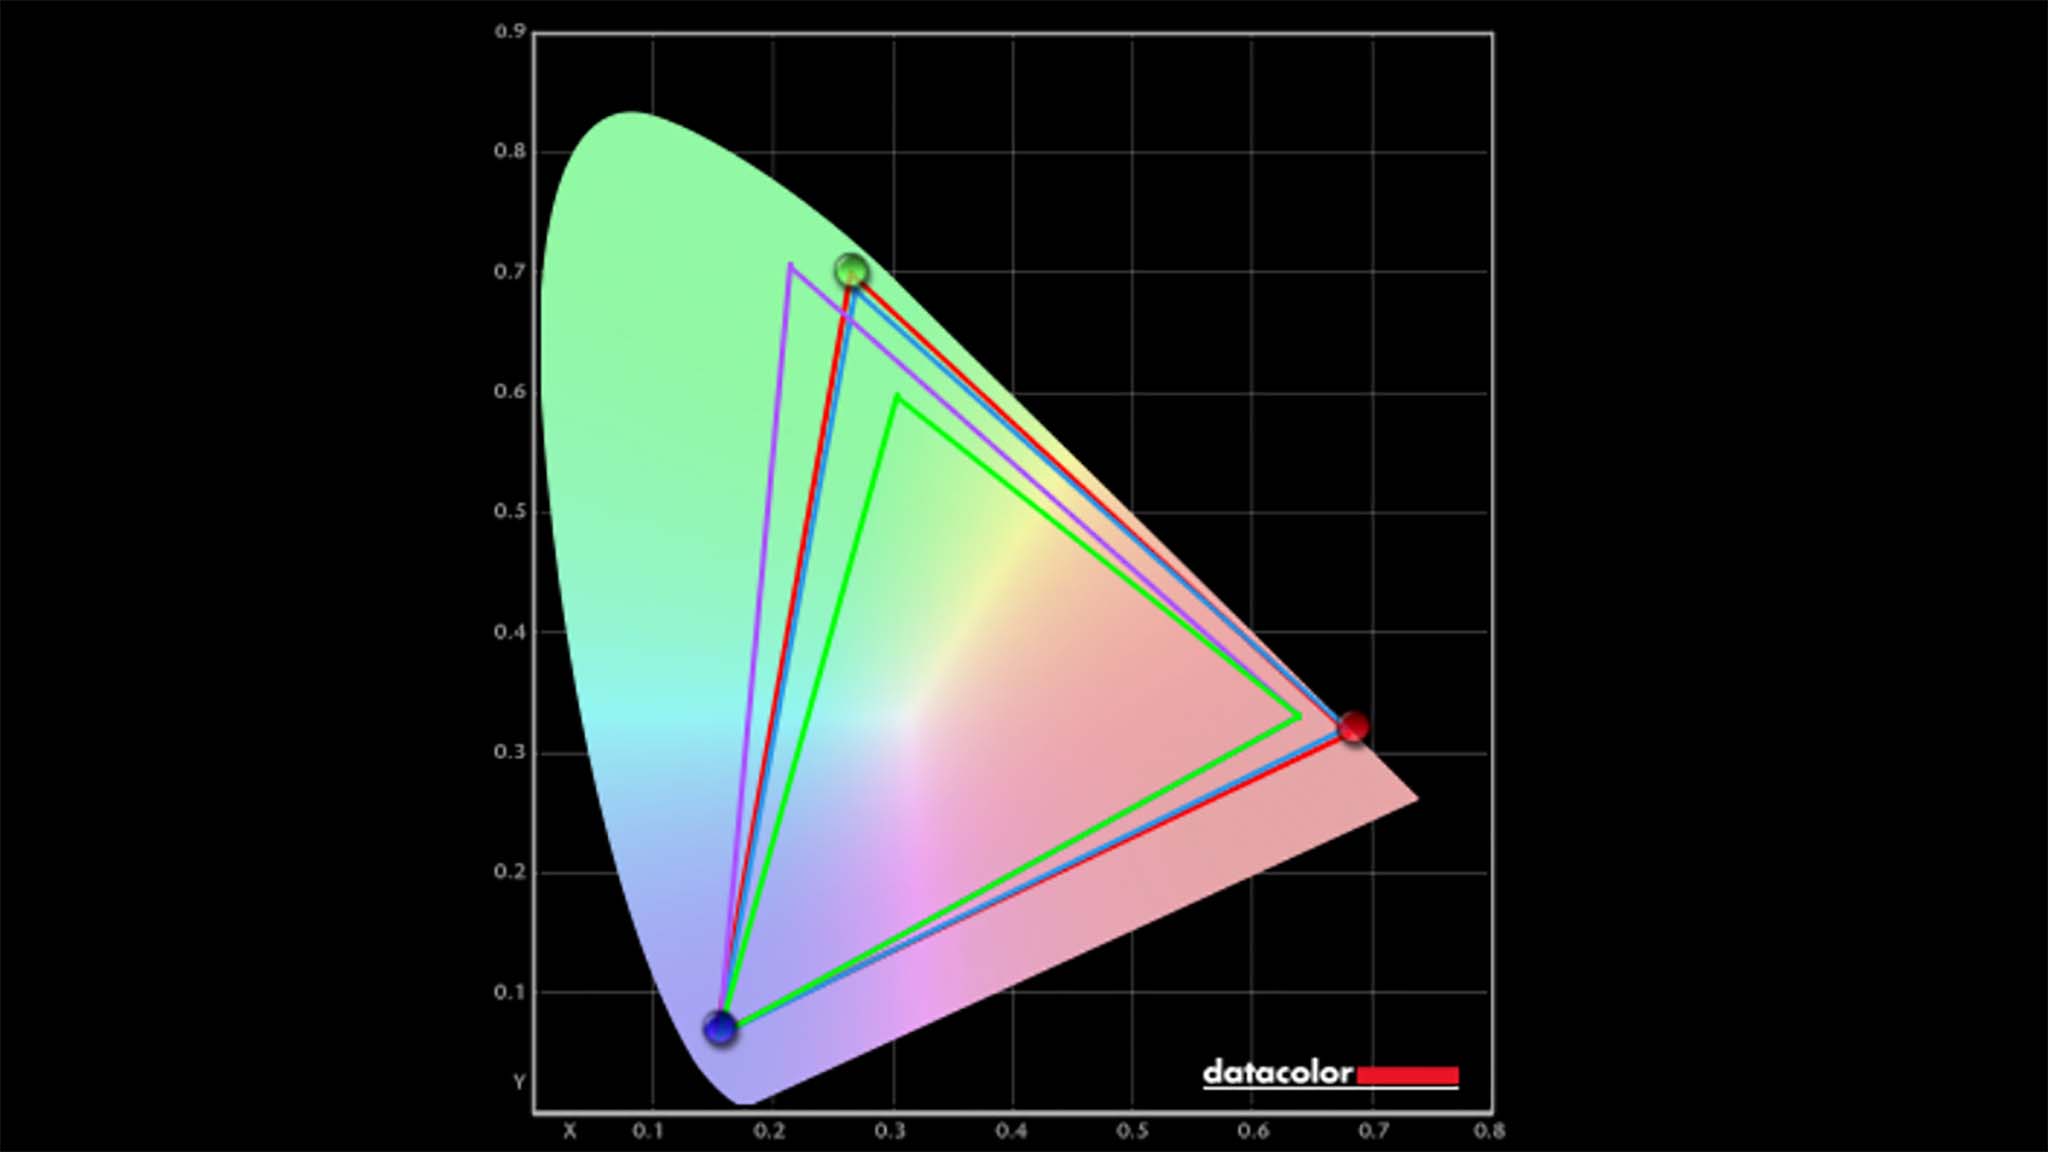 Alienware m18 R2 colorimeter results.